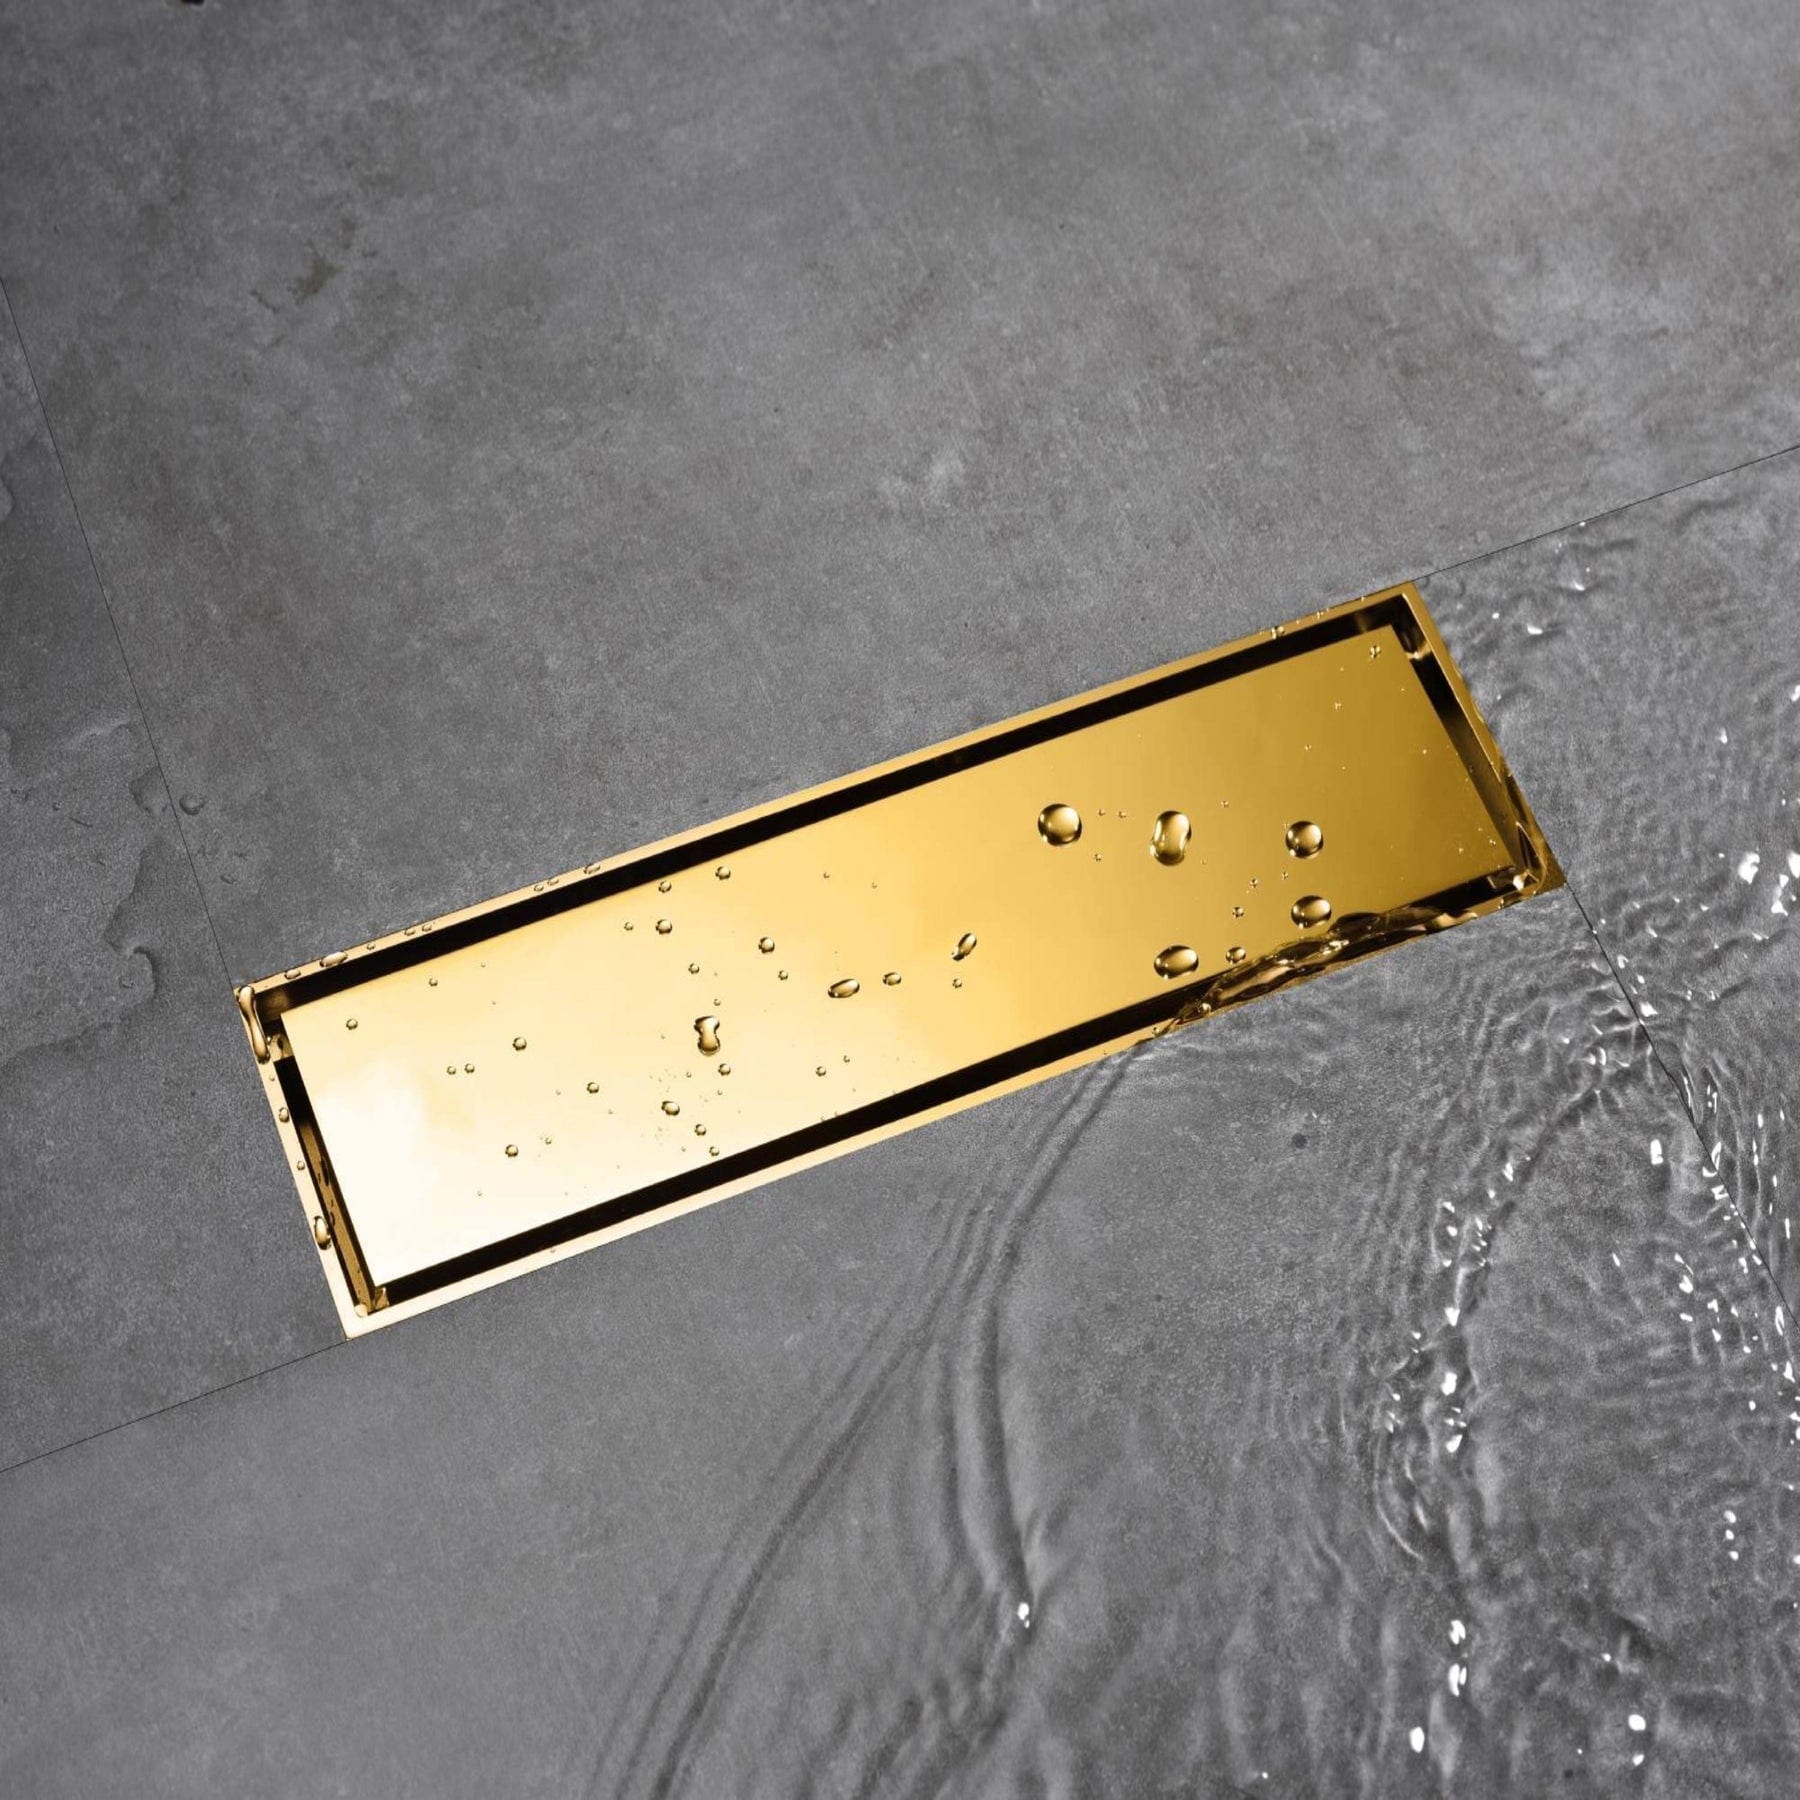 Bathtub Grid Strainer Gold Polished, Bathroom Accessories